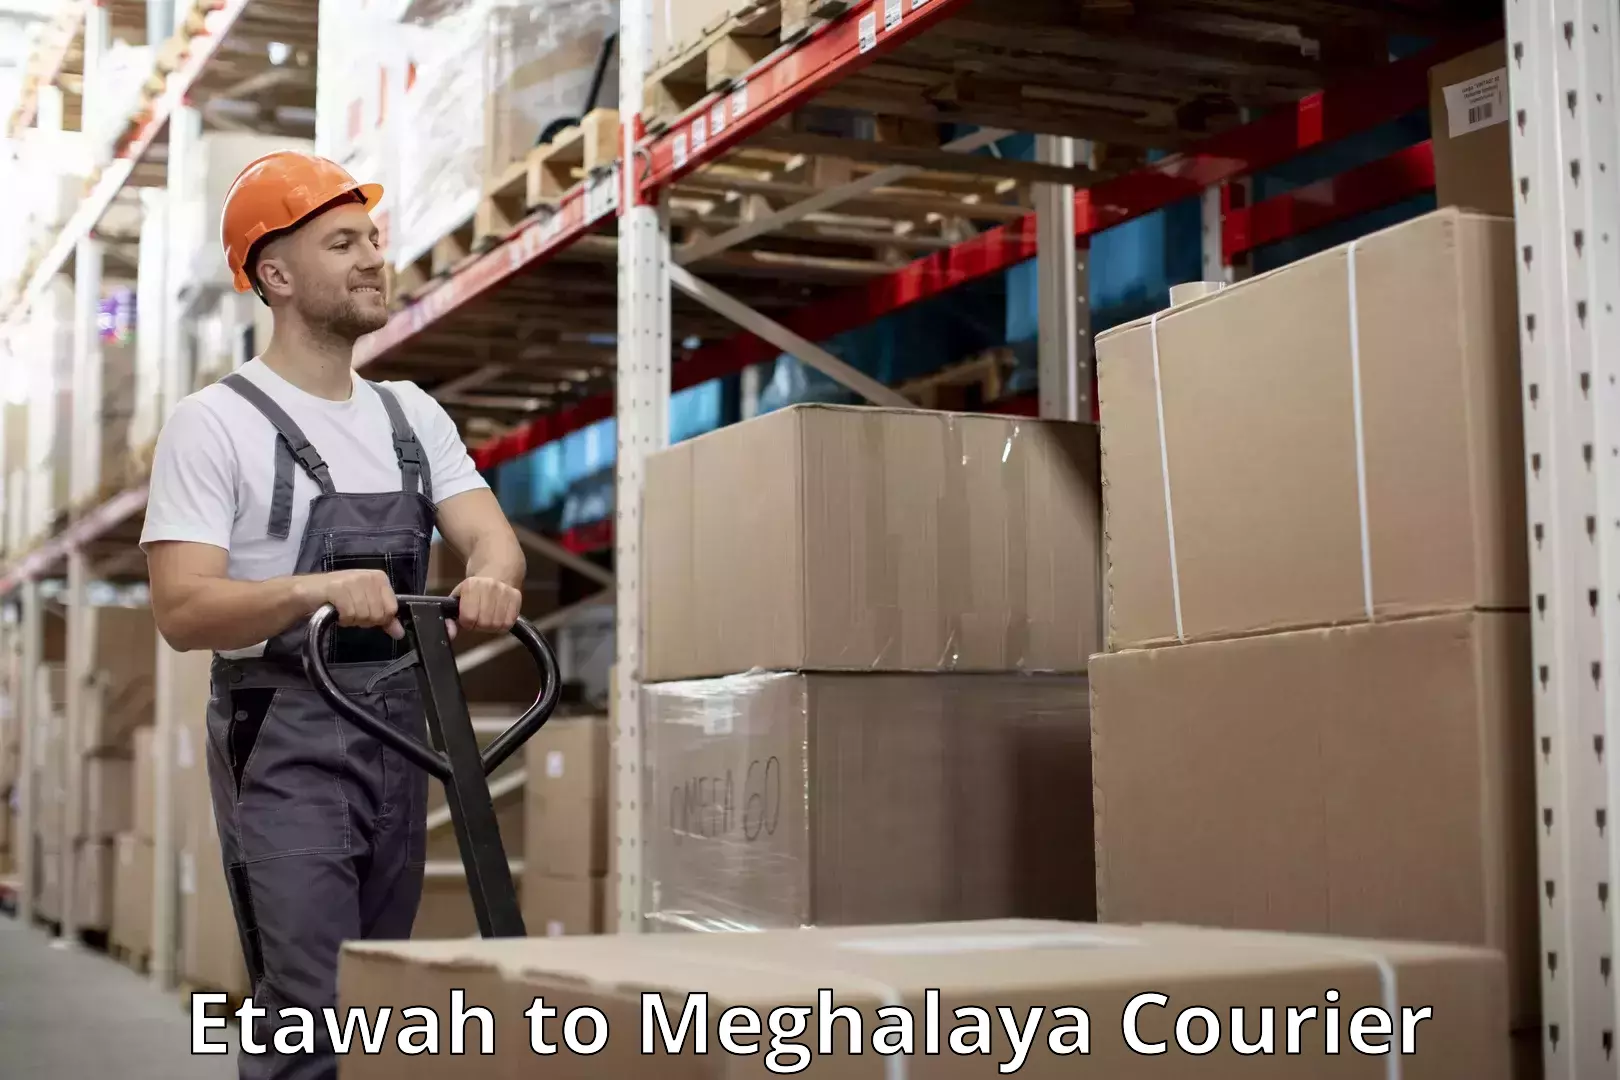 Luggage dispatch service Etawah to Meghalaya